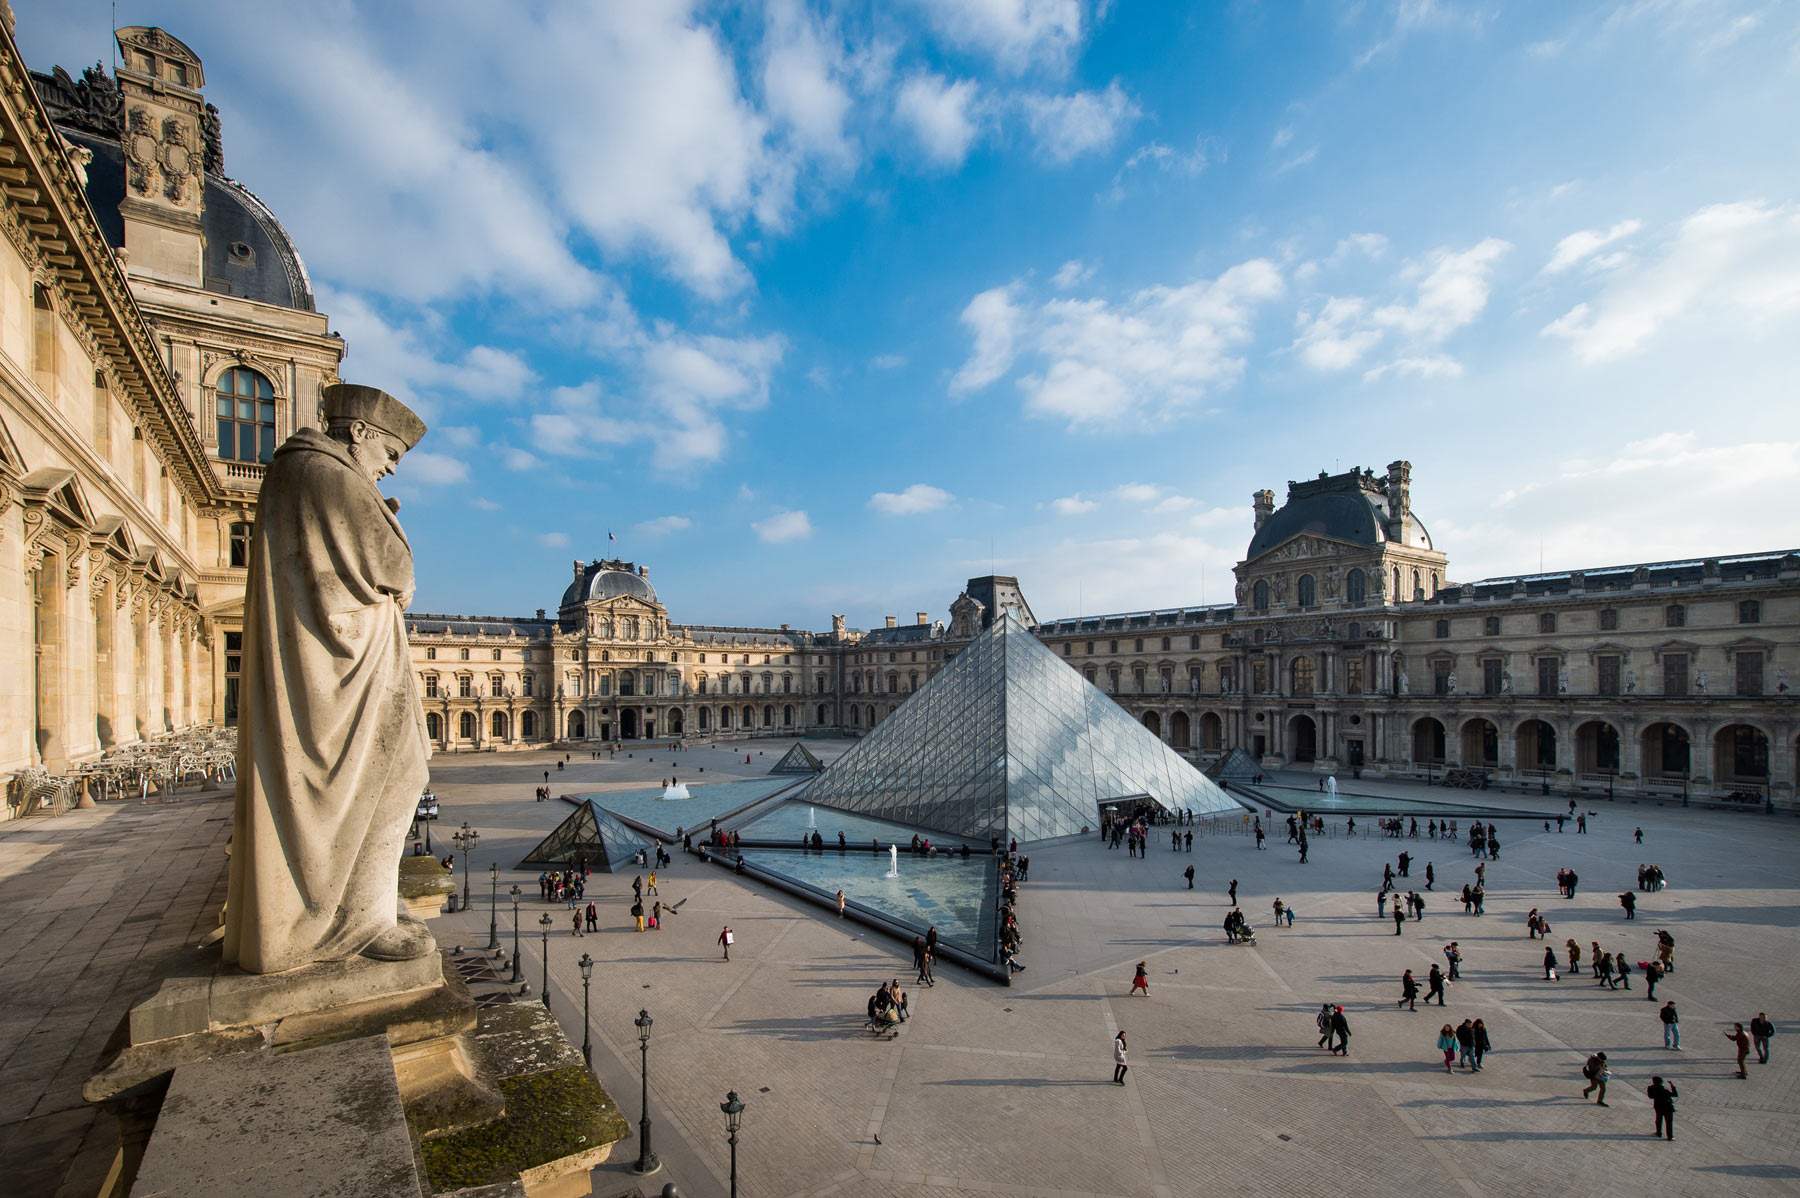 Il Louvre collabora con Sotheby's per condurre ricerche sulle opere rubate dai nazisti 